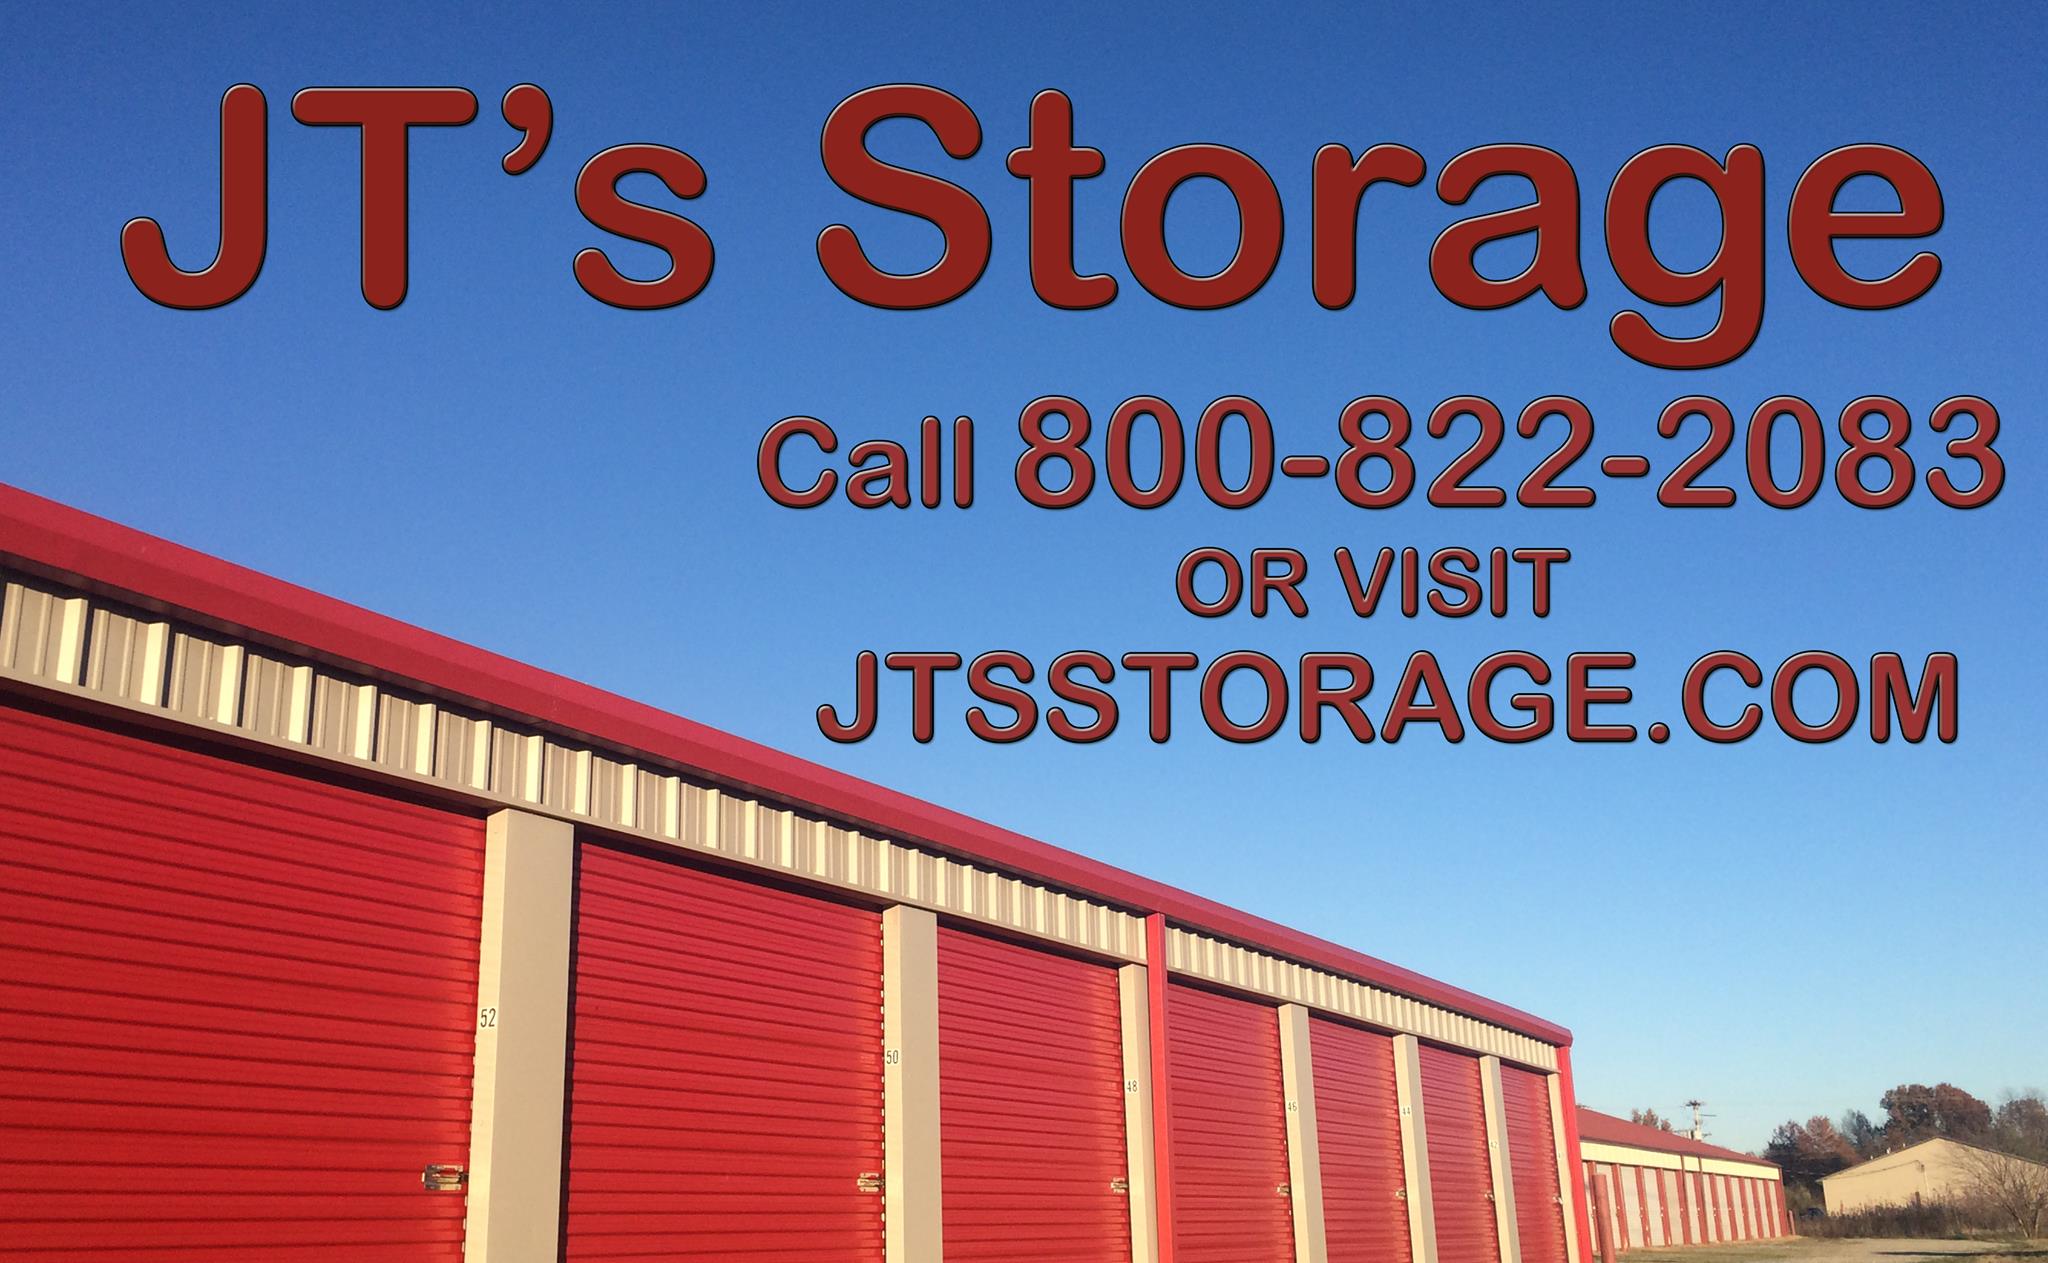 JT's Storage